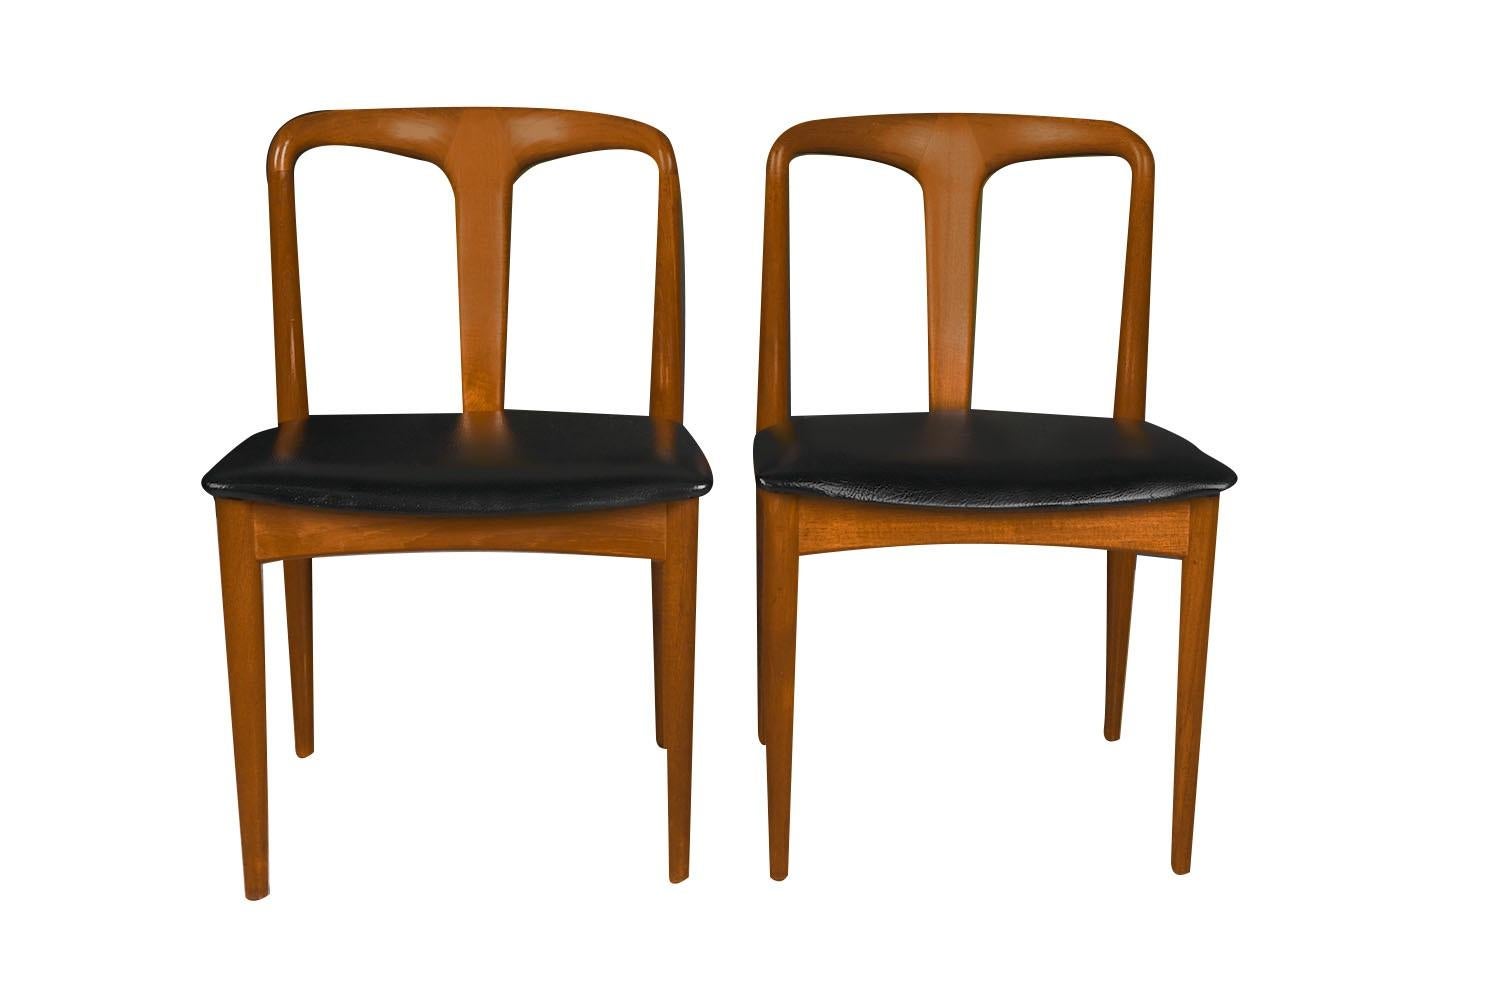 Magnifique paire de chaises de salle à manger modernes danoises 'Juliane' en teck, fabriquées au Danemark vers les années 1960 par le célèbre designer Johannes Andersen pour Uldum Møbelfabrik. Superbement fabriqués dans de riches cadres en teck